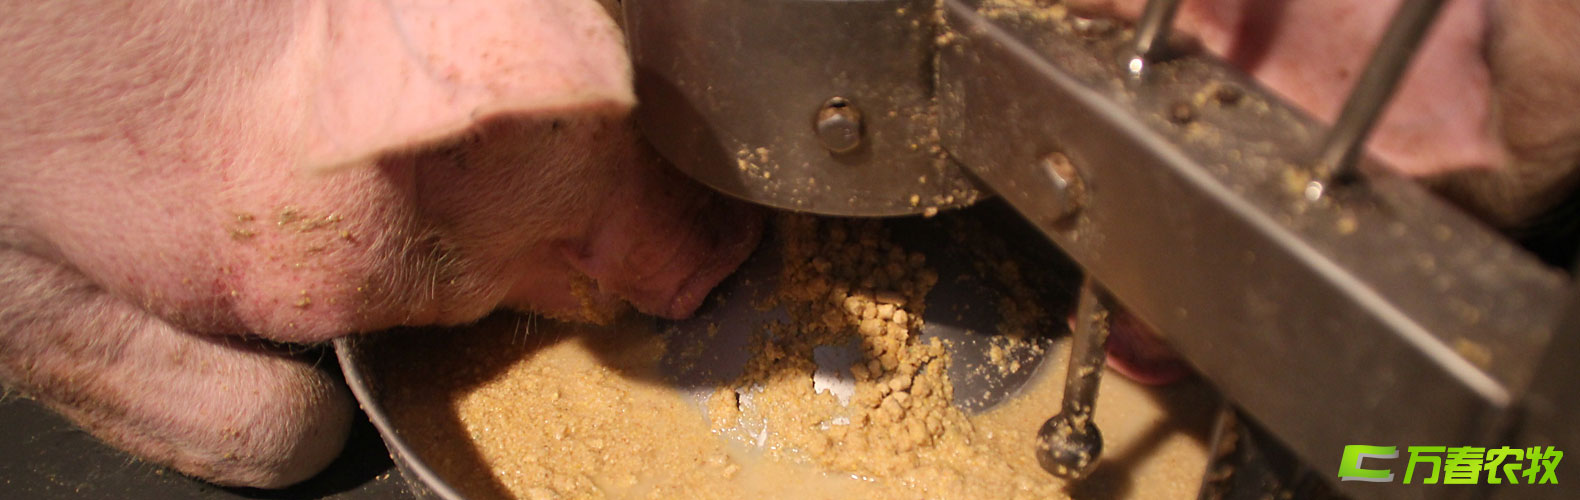 猪用湿拌饲料自动饲喂器与系统-四川成都万春农牧机械